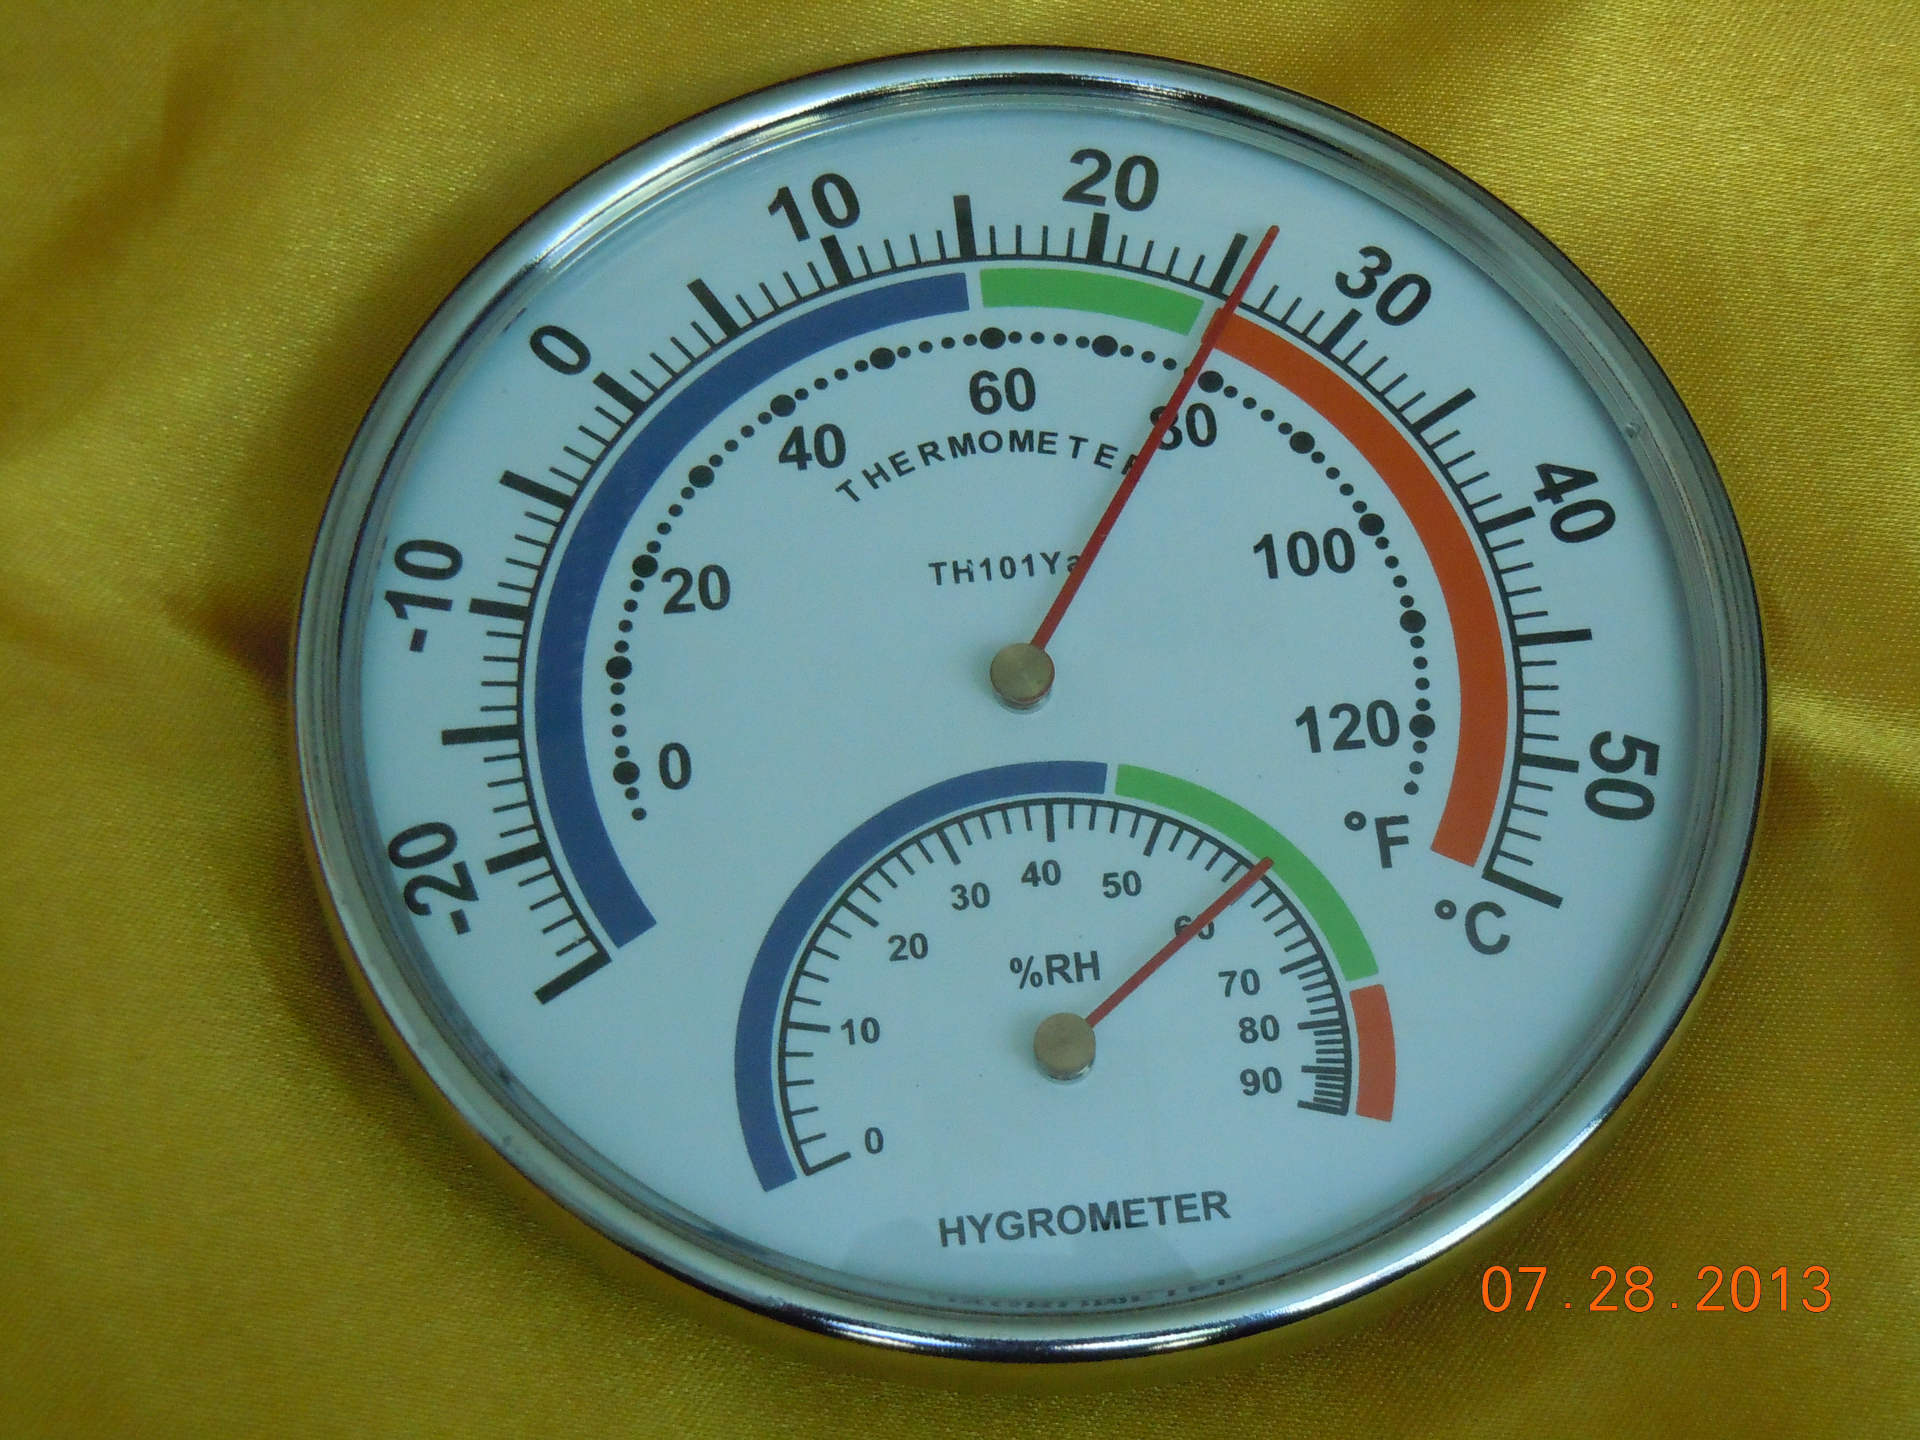 厂家直接供应舒适温湿度计,供应温度计,供应湿度计th101ya